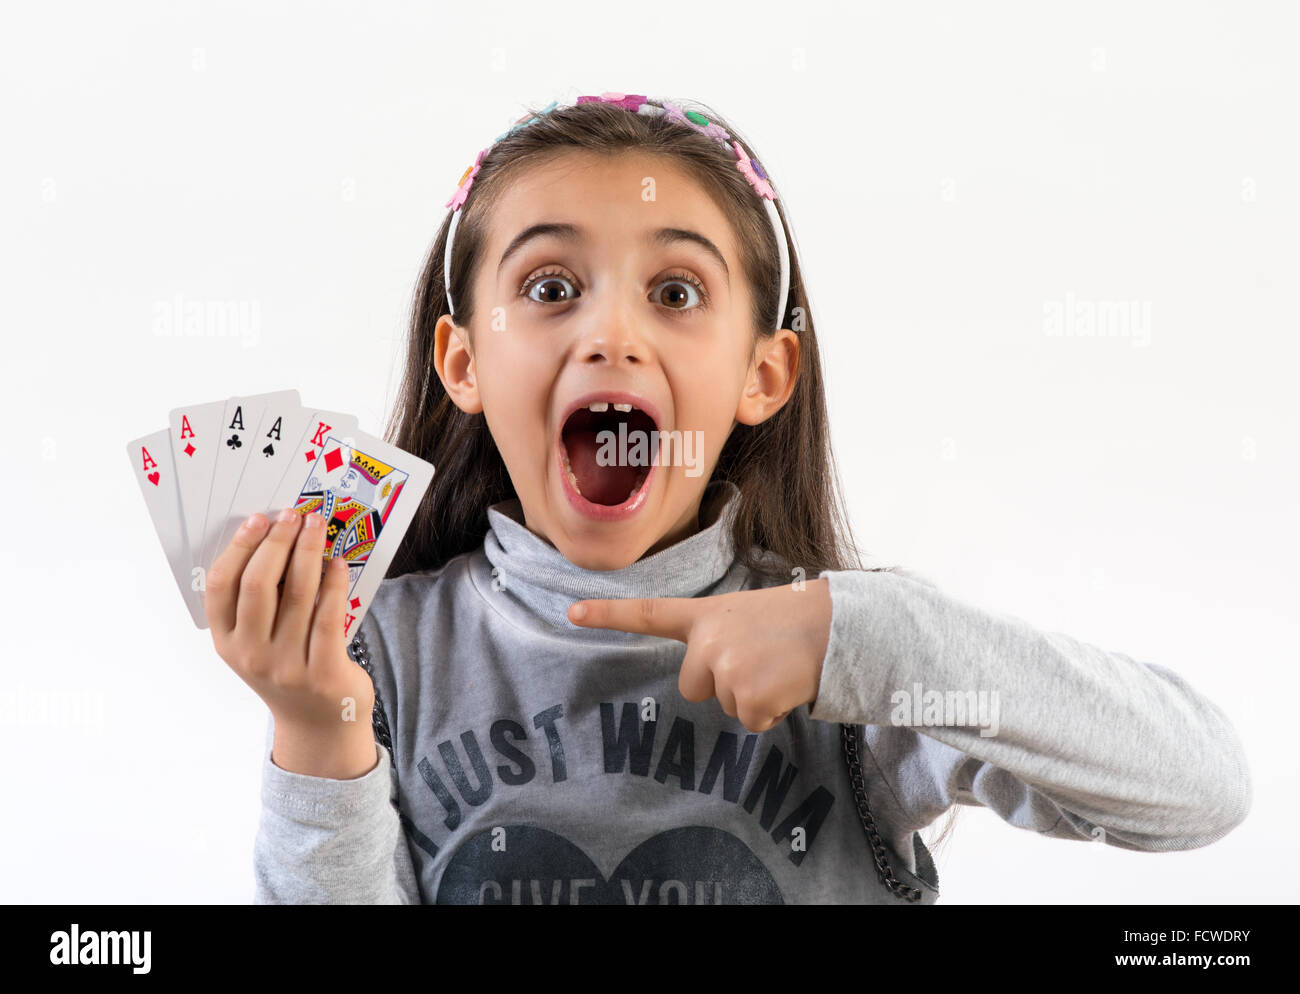 Emocionada niña señalando una mano de póquer ganadora Foto de stock